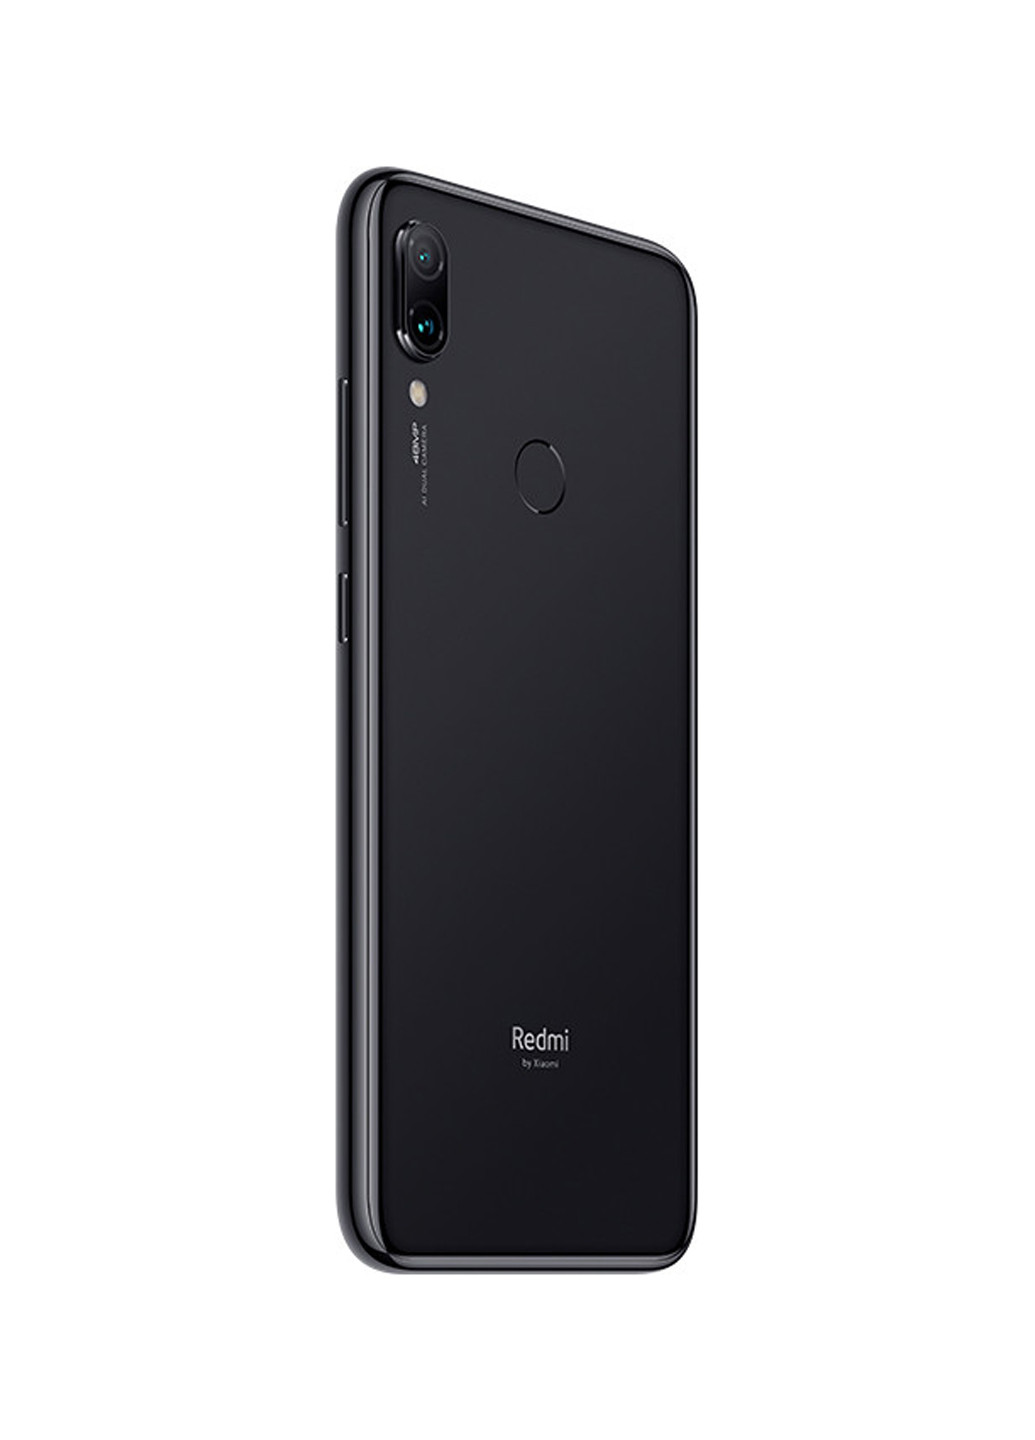 Смартфон Xiaomi redmi note 7 4/128gb space black (130547936)